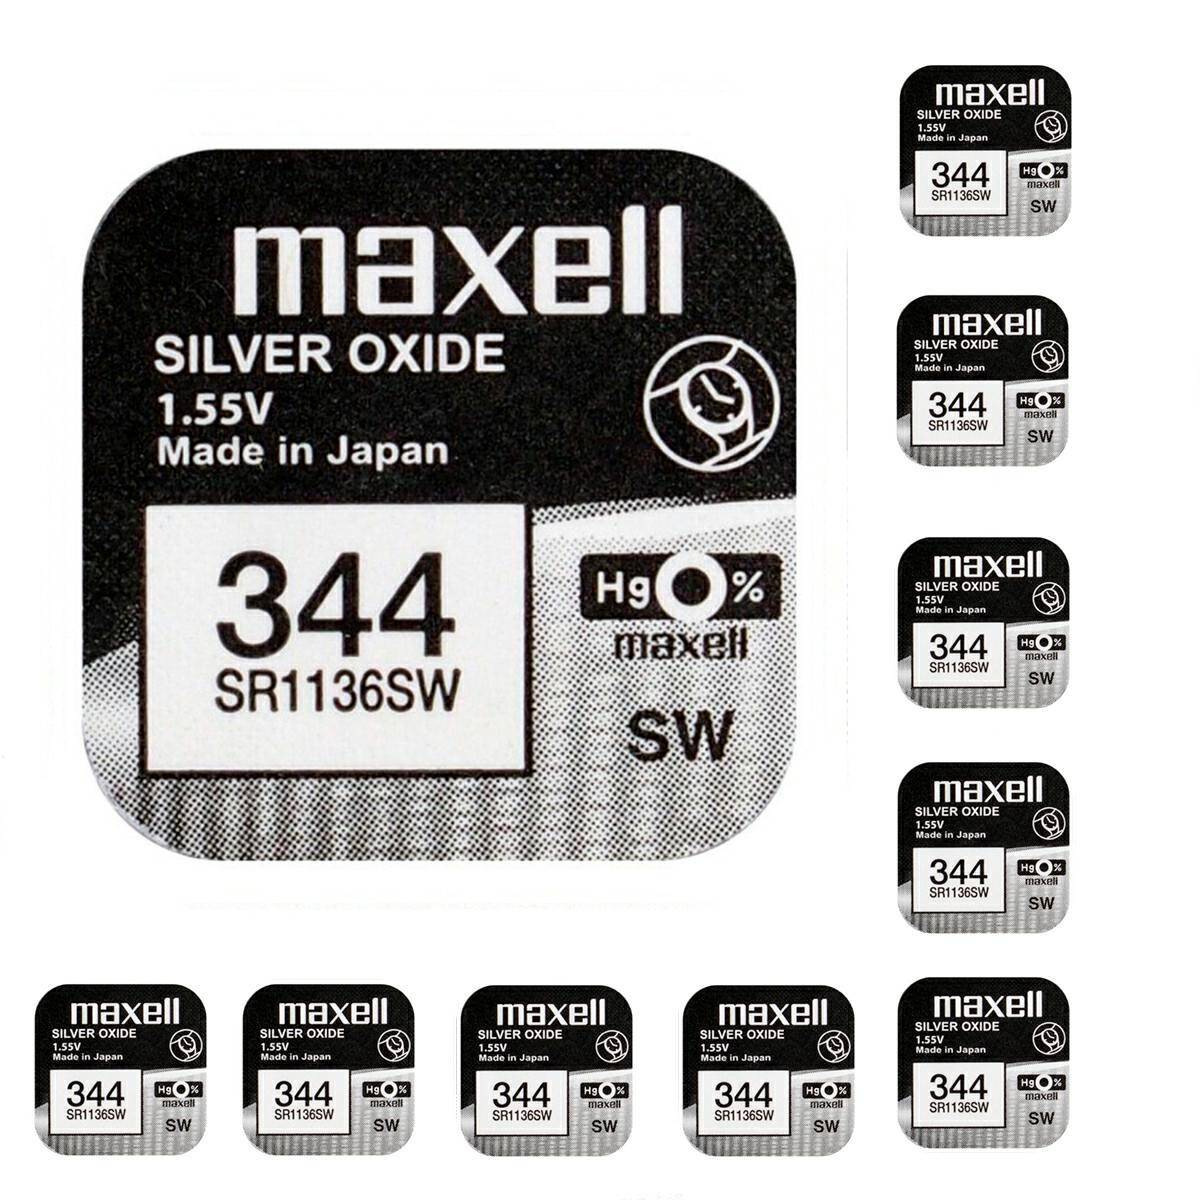 Batterie Maxell 344 SR1136SW 1,55V 10 stck